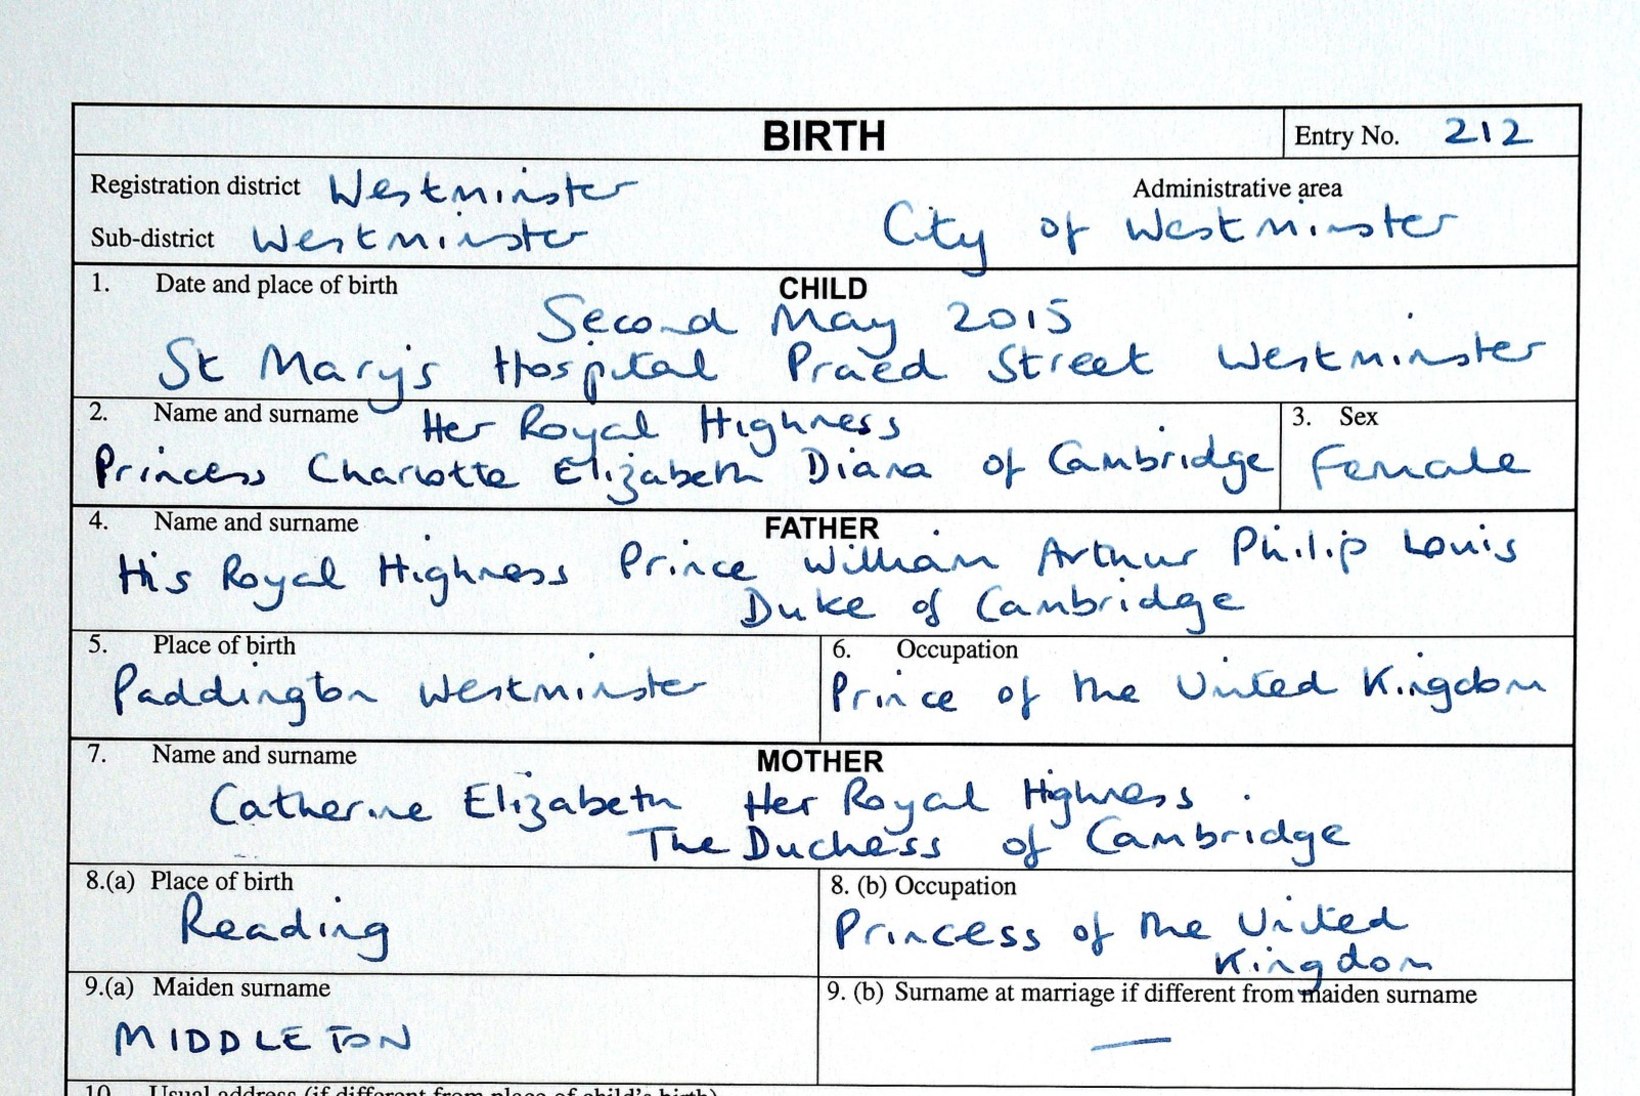 Mida printsess Charlotte Elizabeth Diana nimekaimudelt õppida võiks?